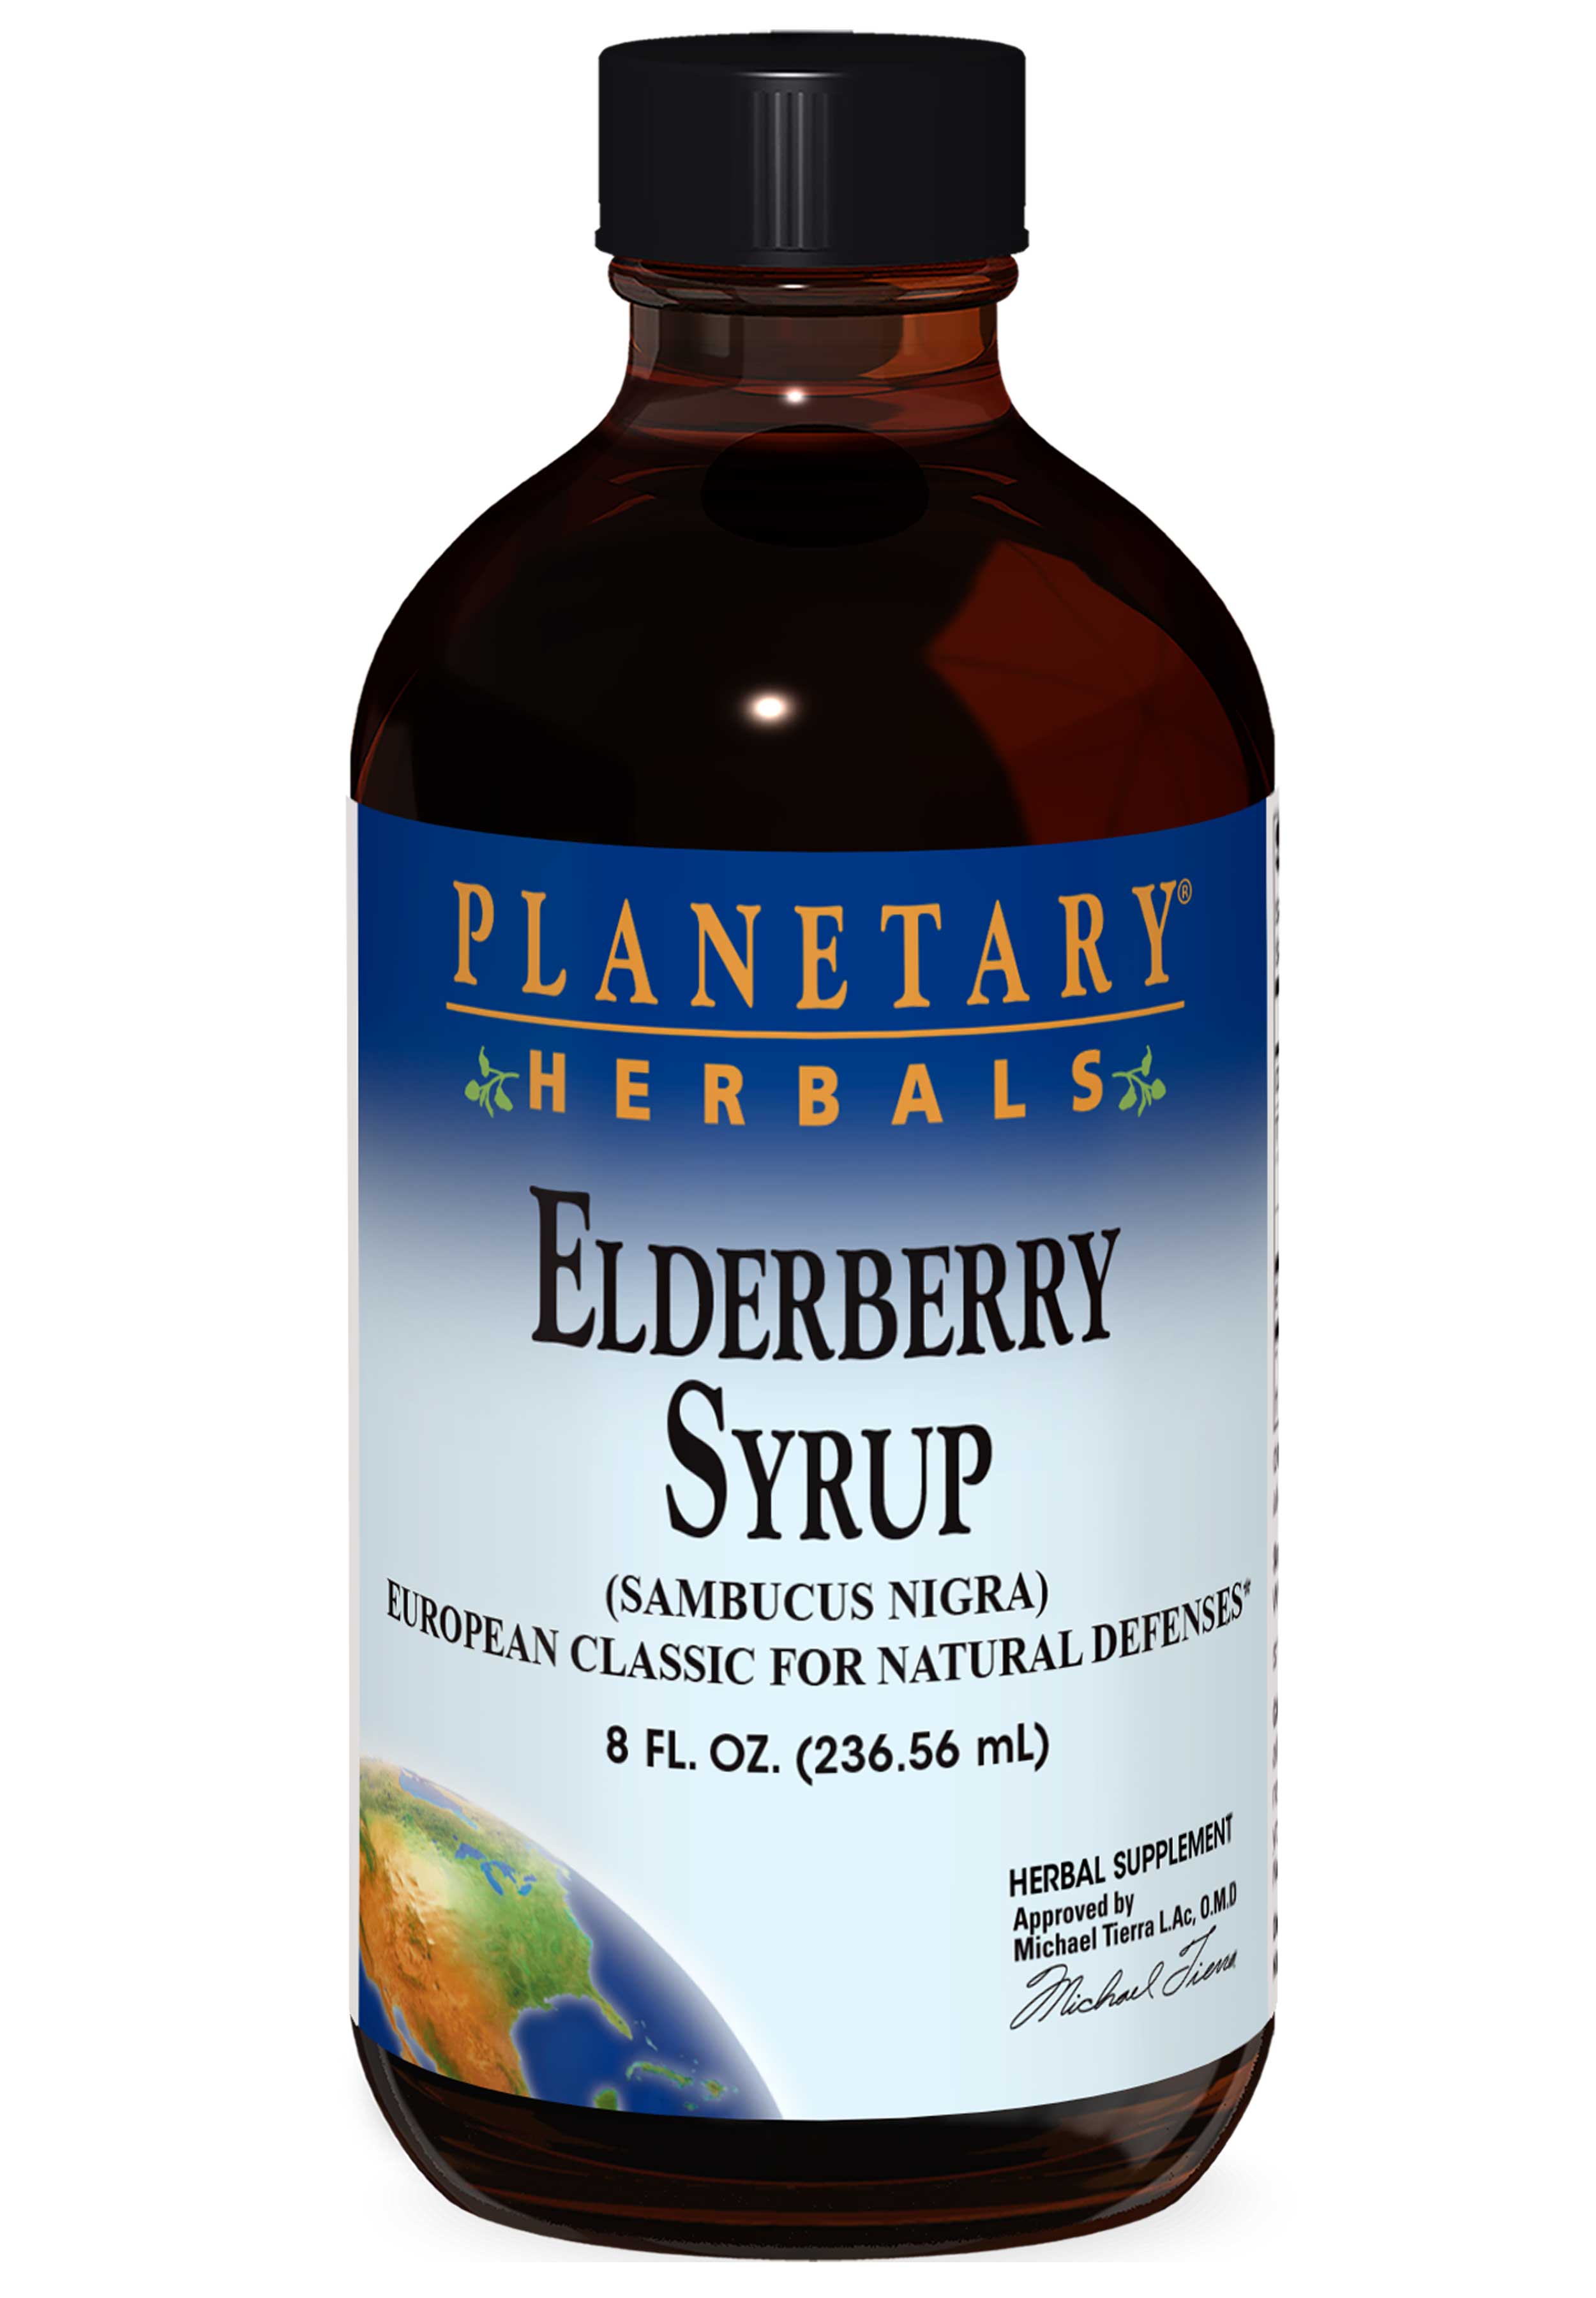 Planetary Herbals Elderberry Syrup Ingredients